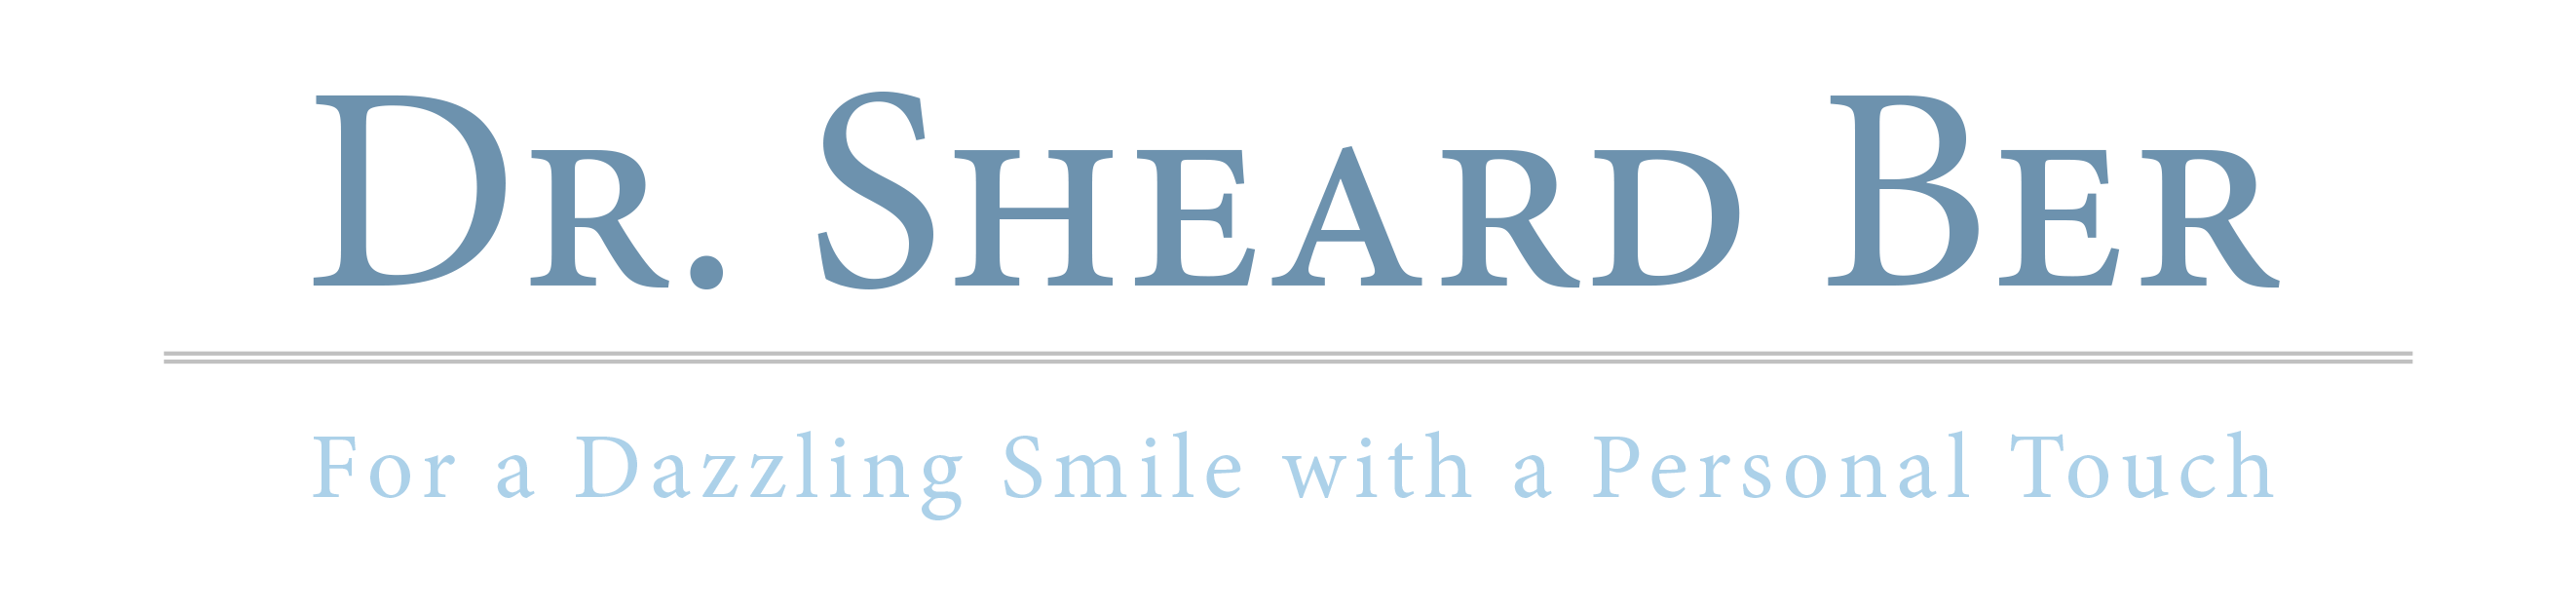 Dr Sheard Ber Thibodaux Dentist